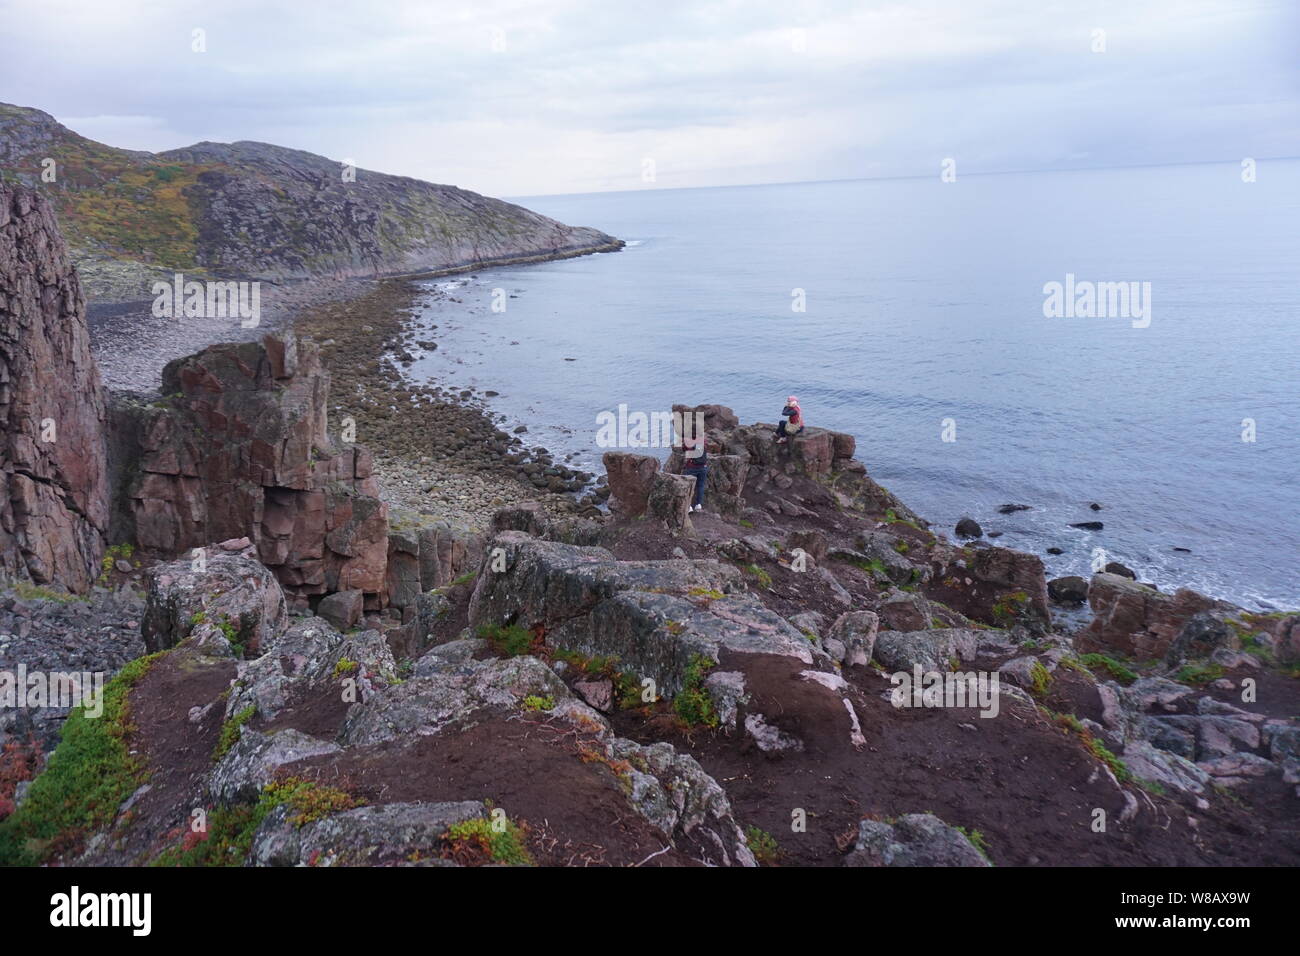 The view of shoreline in Teriberka, Russia Stock Photo